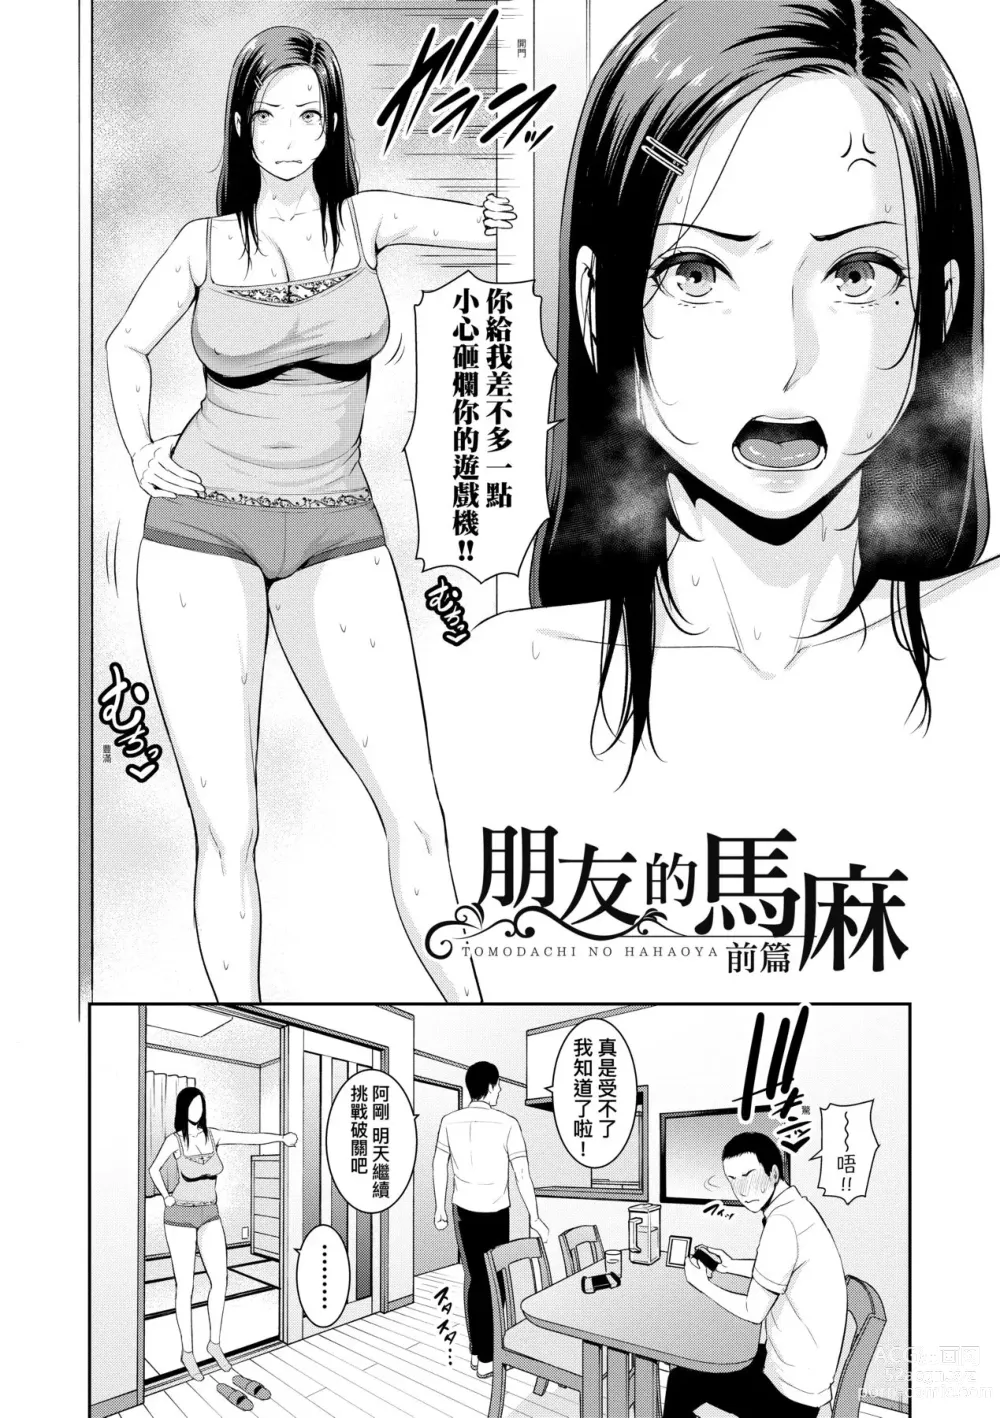 Page 7 of manga 朋友的馬麻 (decensored)